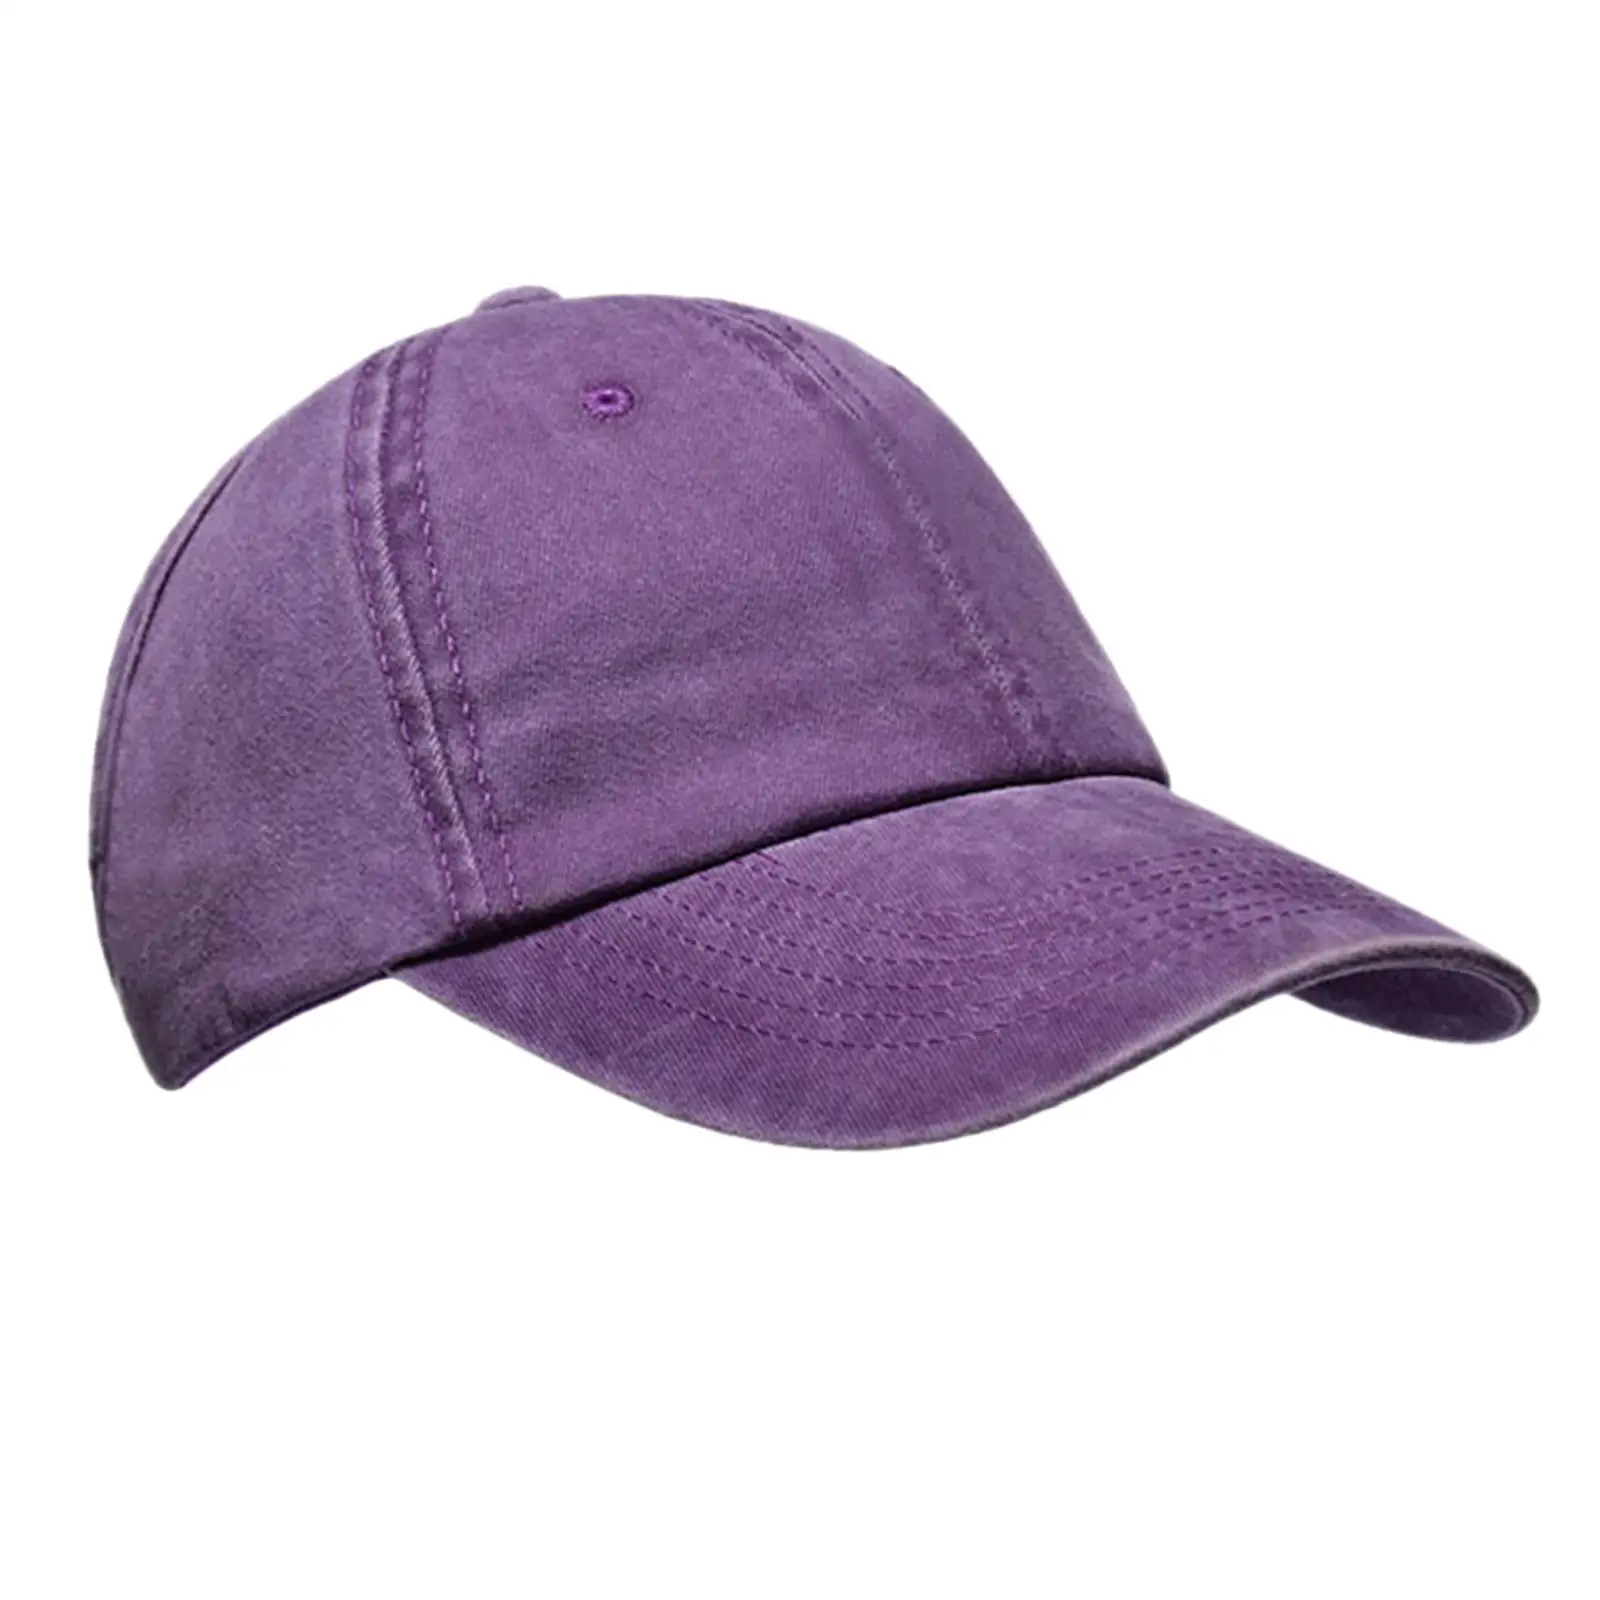 Ponytail Baseball   Women Messy High Bun Tennis Hat Adjustable